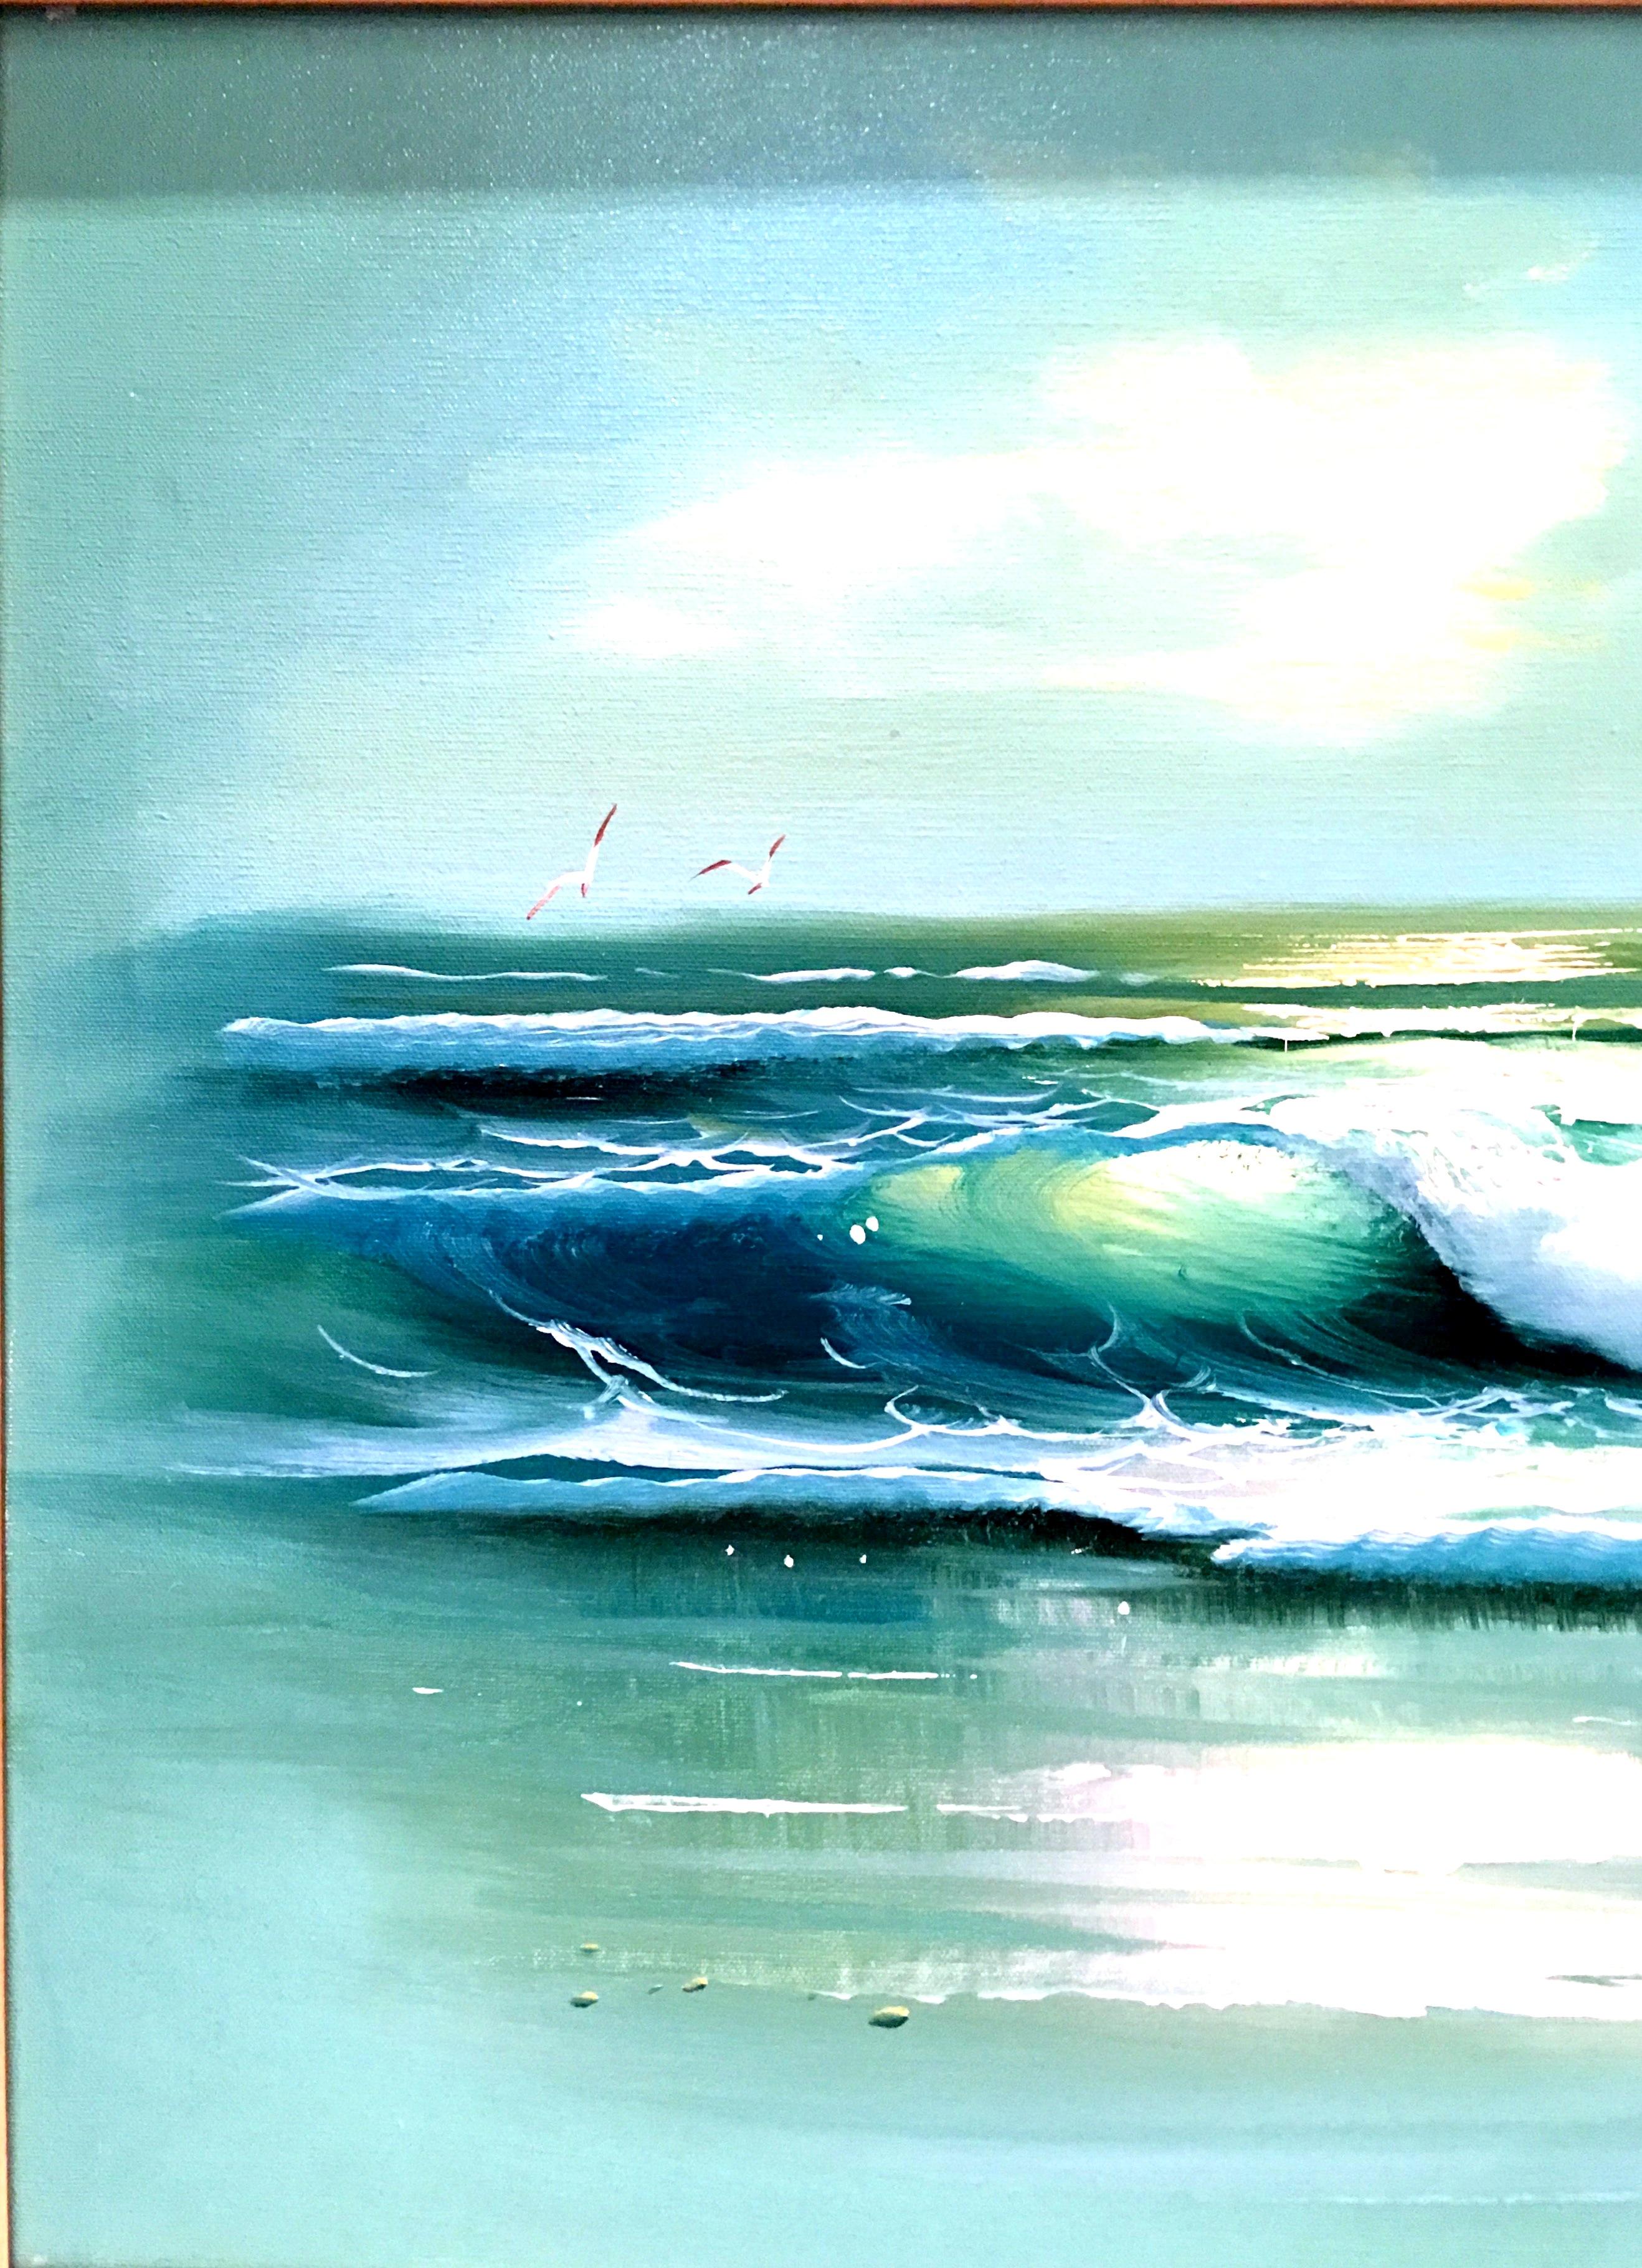 paintings of ocean scenes